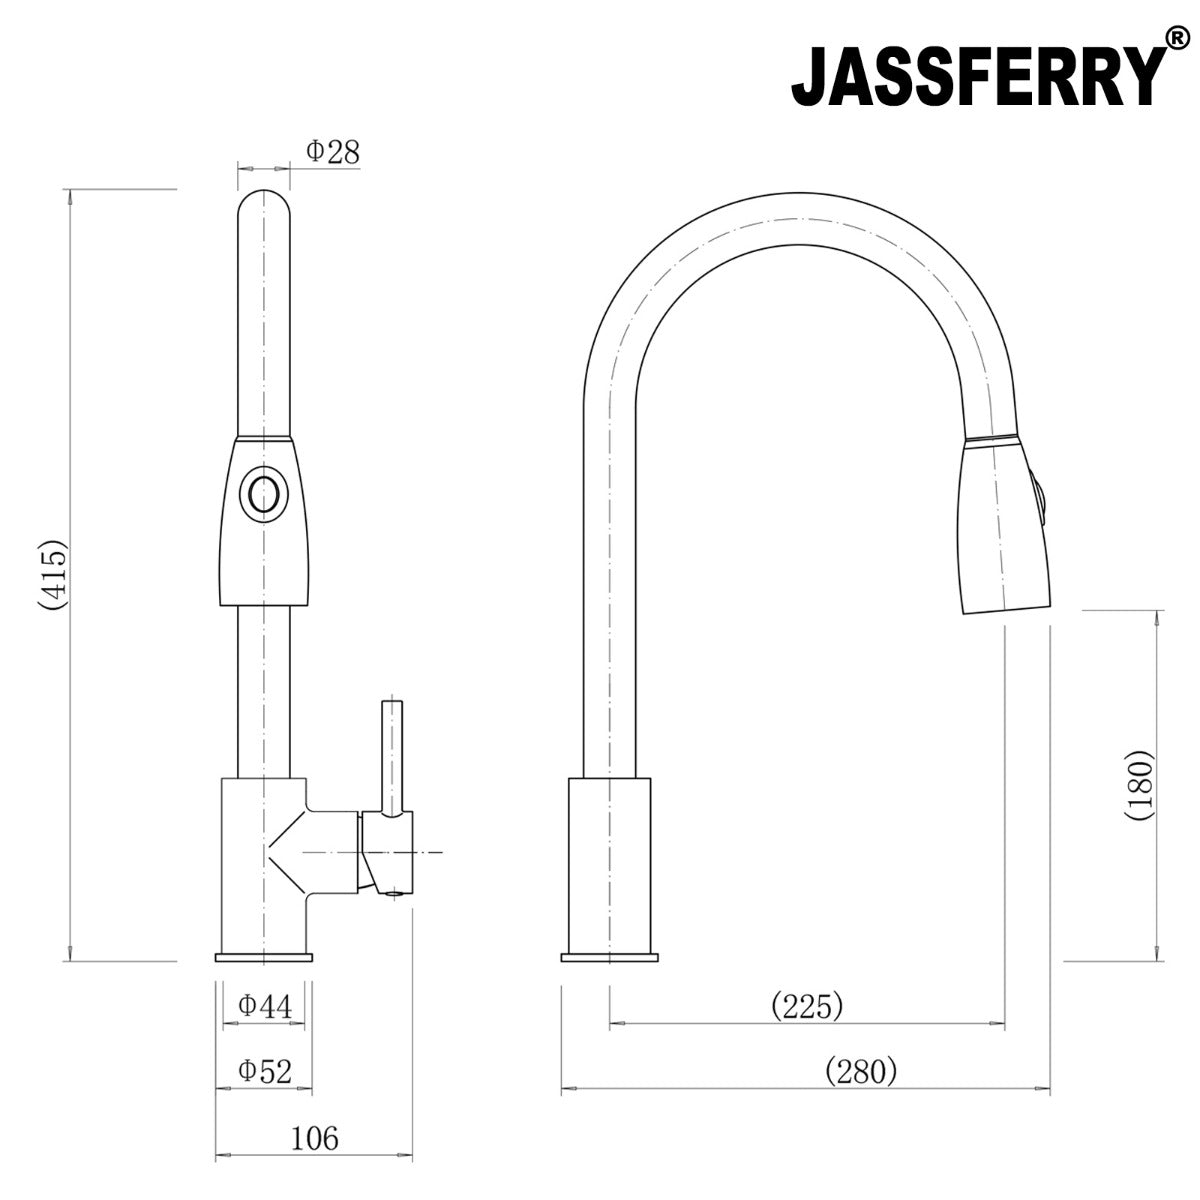 JassferryJASSFERRY 360 Degree Kitchen Mixer taps with Pull Out Spray Polish ChromeKitchen taps